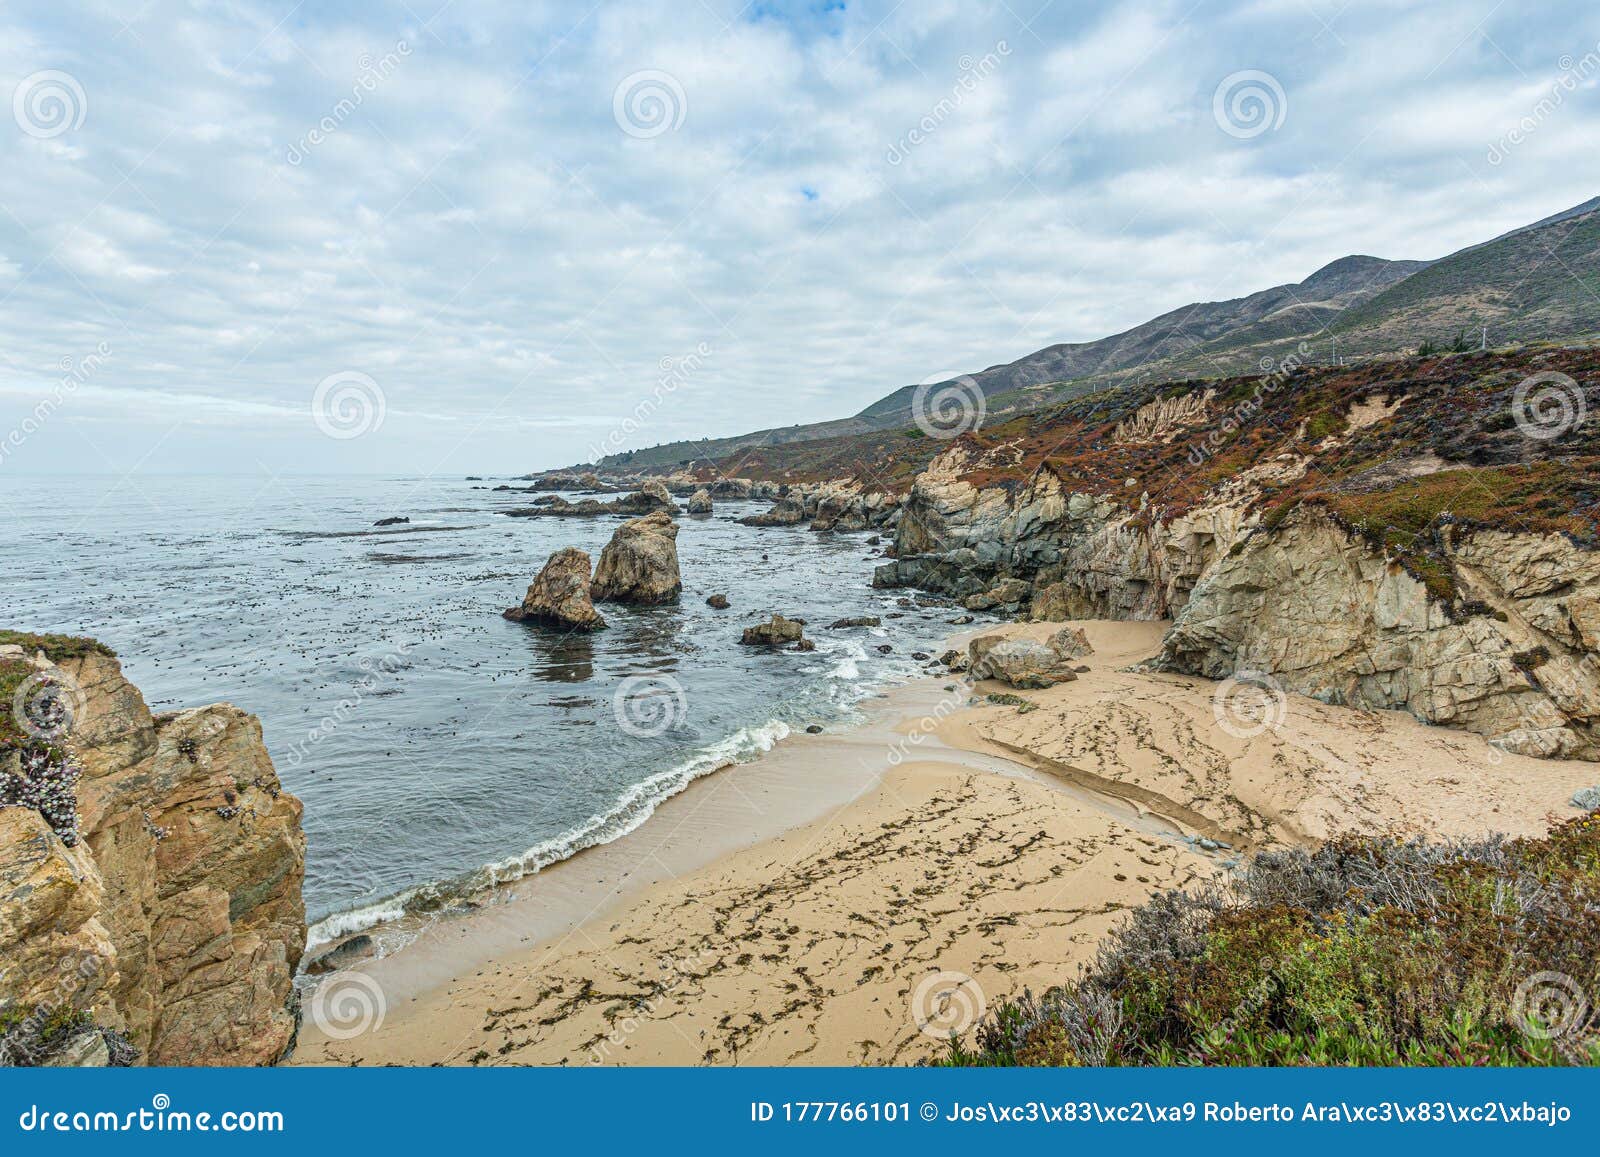 a beautiful view in  califÃÂ³rnia coast - big sur, condado de monterey, califÃÂ³rnia